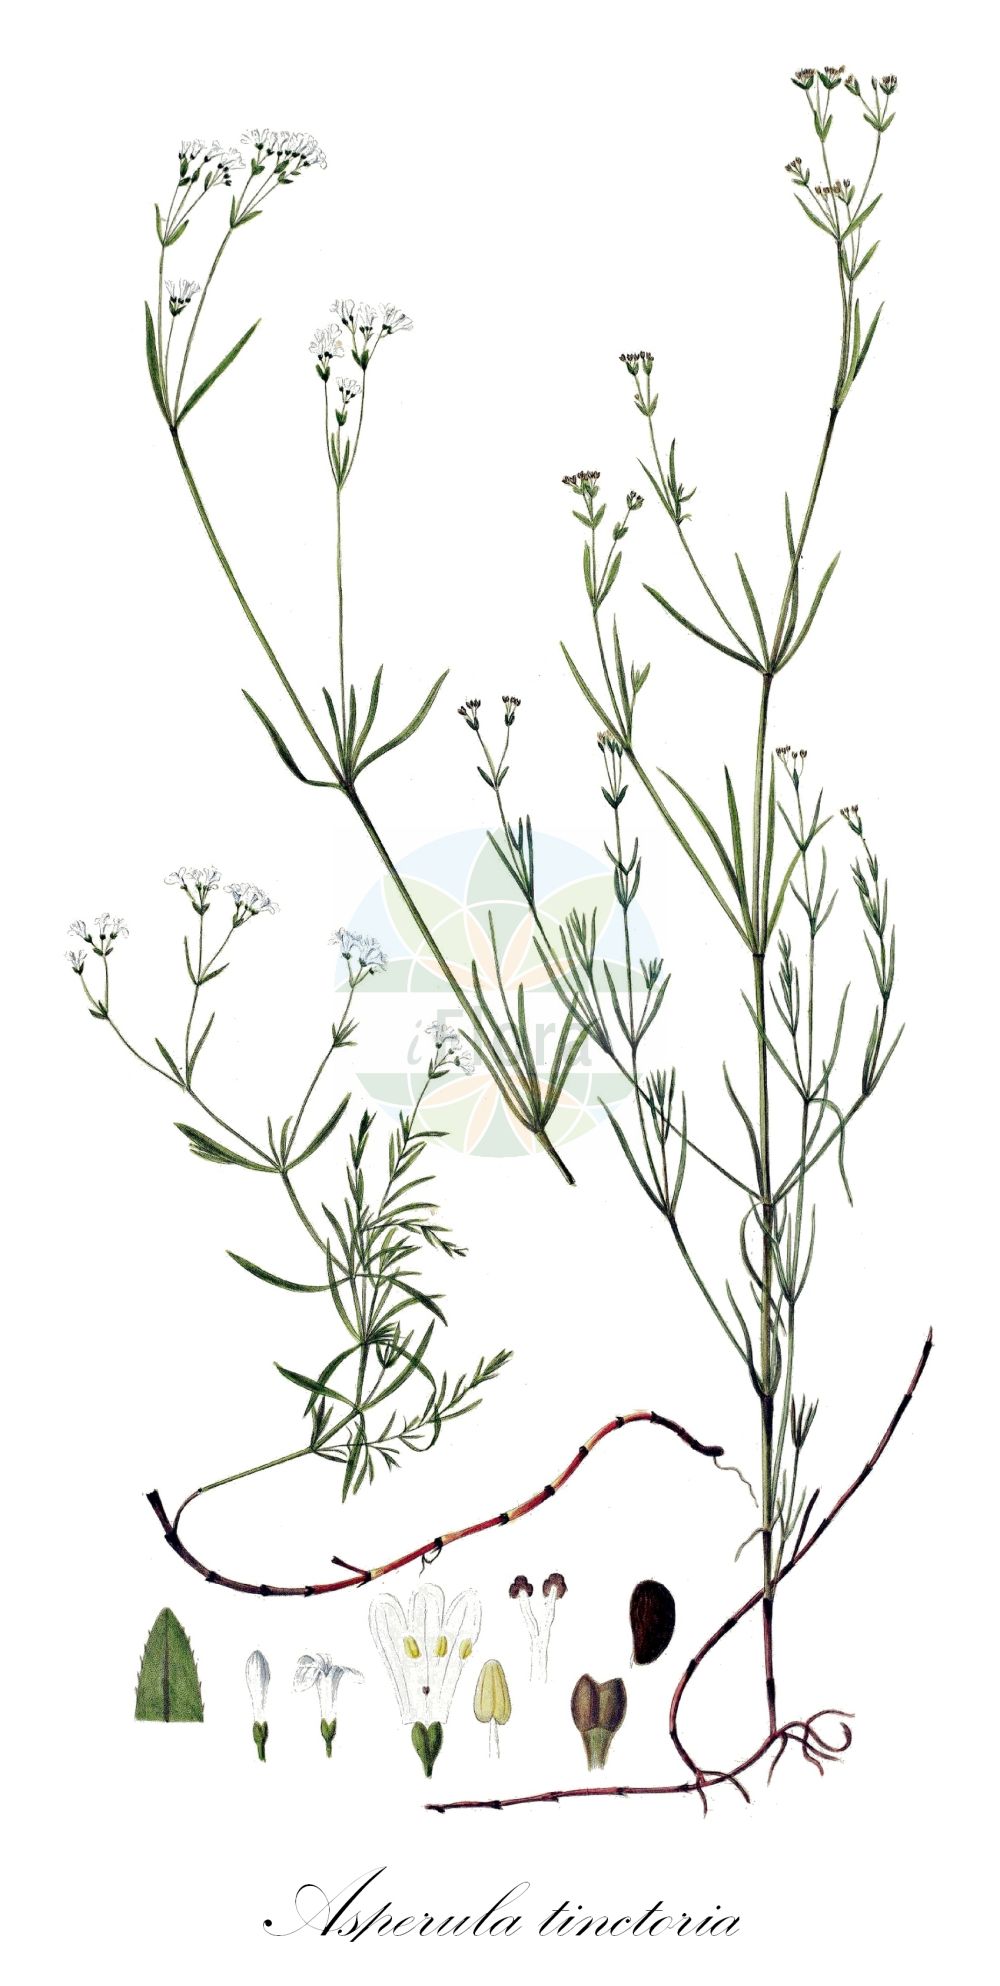 Historische Abbildung von Asperula tinctoria (Färber-Meier - Dyer's Woodruff). Das Bild zeigt Blatt, Bluete, Frucht und Same. ---- Historical Drawing of Asperula tinctoria (Färber-Meier - Dyer's Woodruff). The image is showing leaf, flower, fruit and seed.(Asperula tinctoria,Färber-Meier,Dyer's Woodruff,Asperula tinctoria,Galium tinctorium,Galium triandrum,Faerber-Meier,Dyer's Woodruff,Asperula,Meier,Woodruff,Rubiaceae,Rötegewächse,Bedstraw family,Blatt,Bluete,Frucht,Same,leaf,flower,fruit,seed,Oeder (1761-1883))